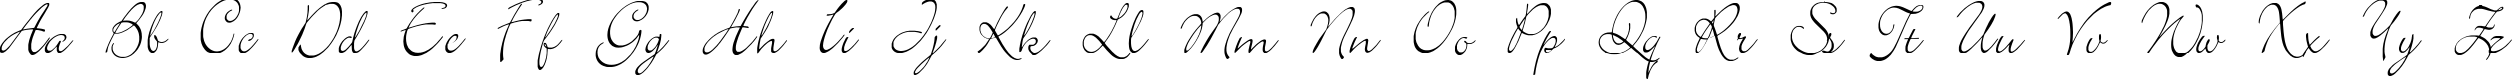 Пример написания английского алфавита шрифтом Elegant